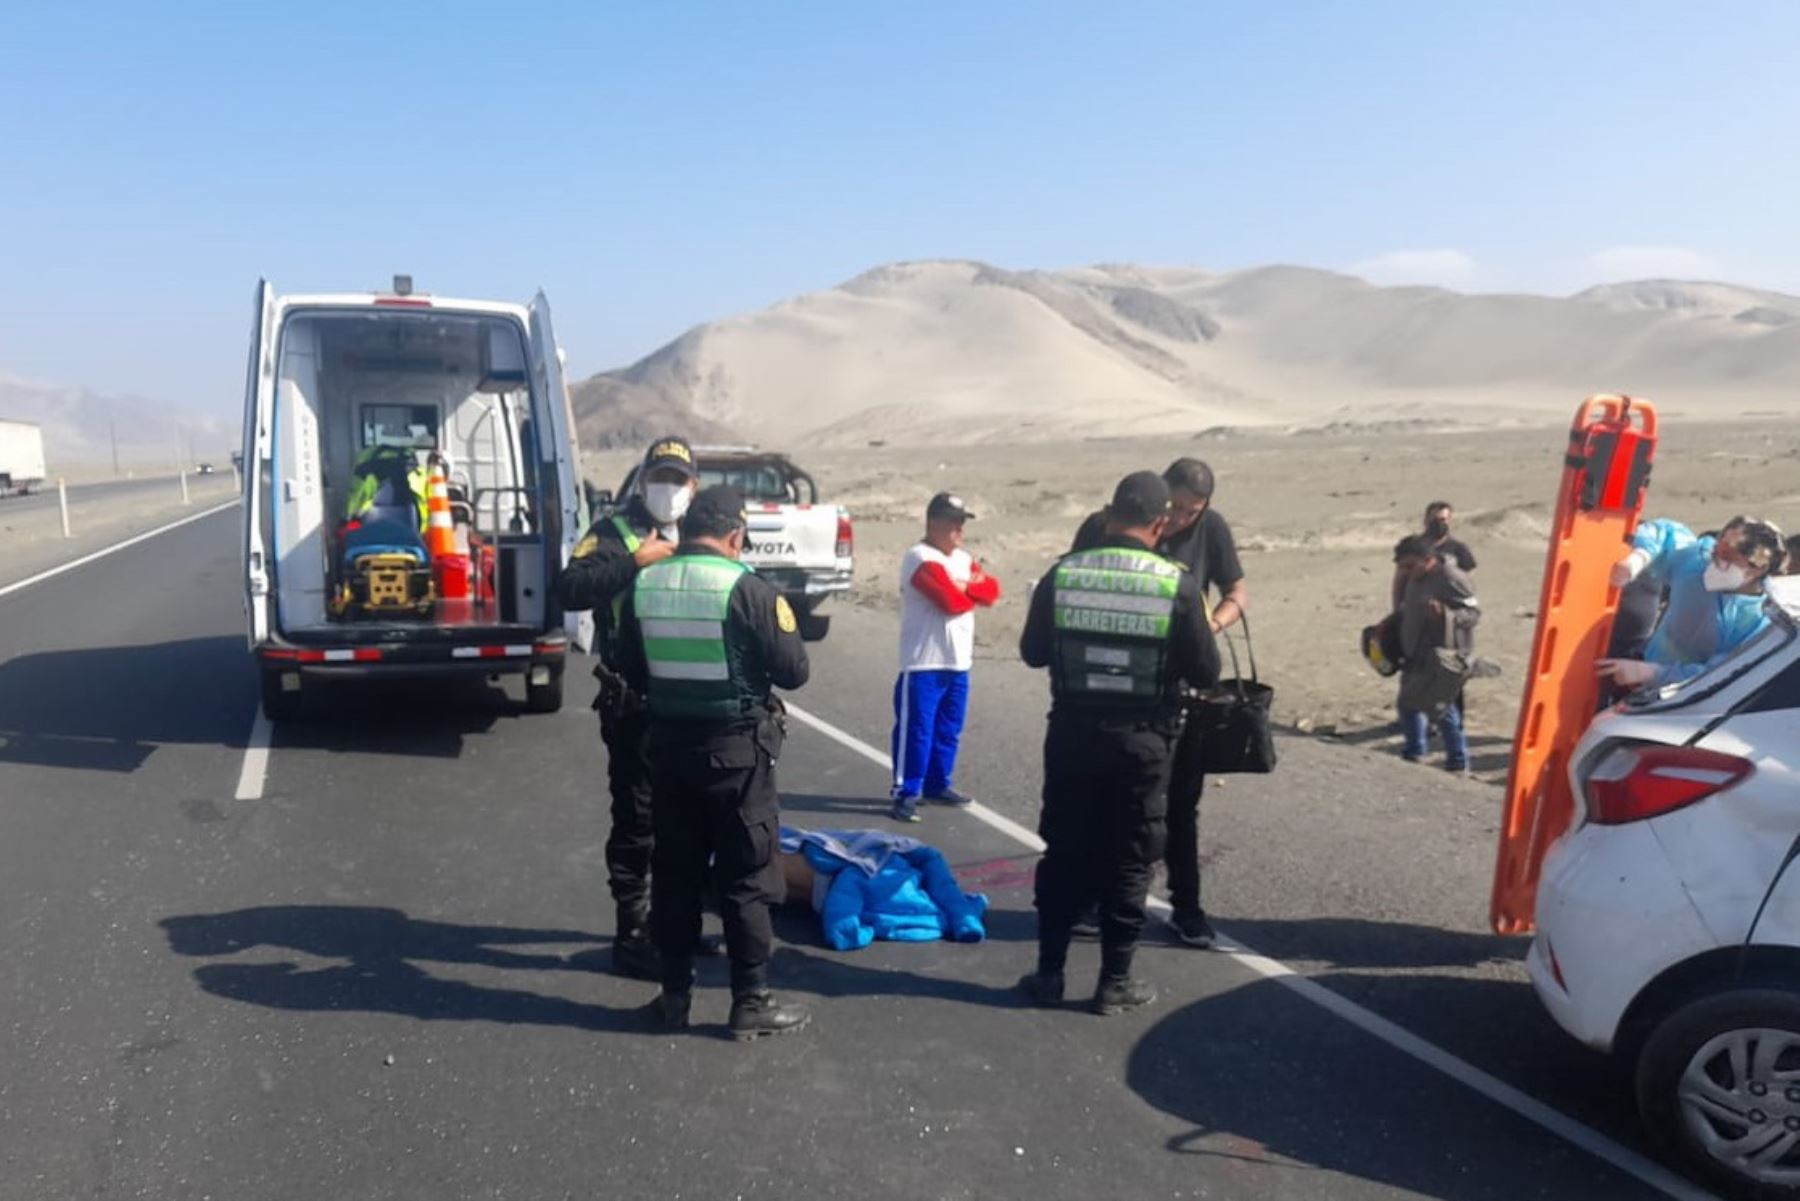 El vehículo siniestrado partió de Trujillo y tenía como destino la ciudad de Chimbote, en la región Áncash.